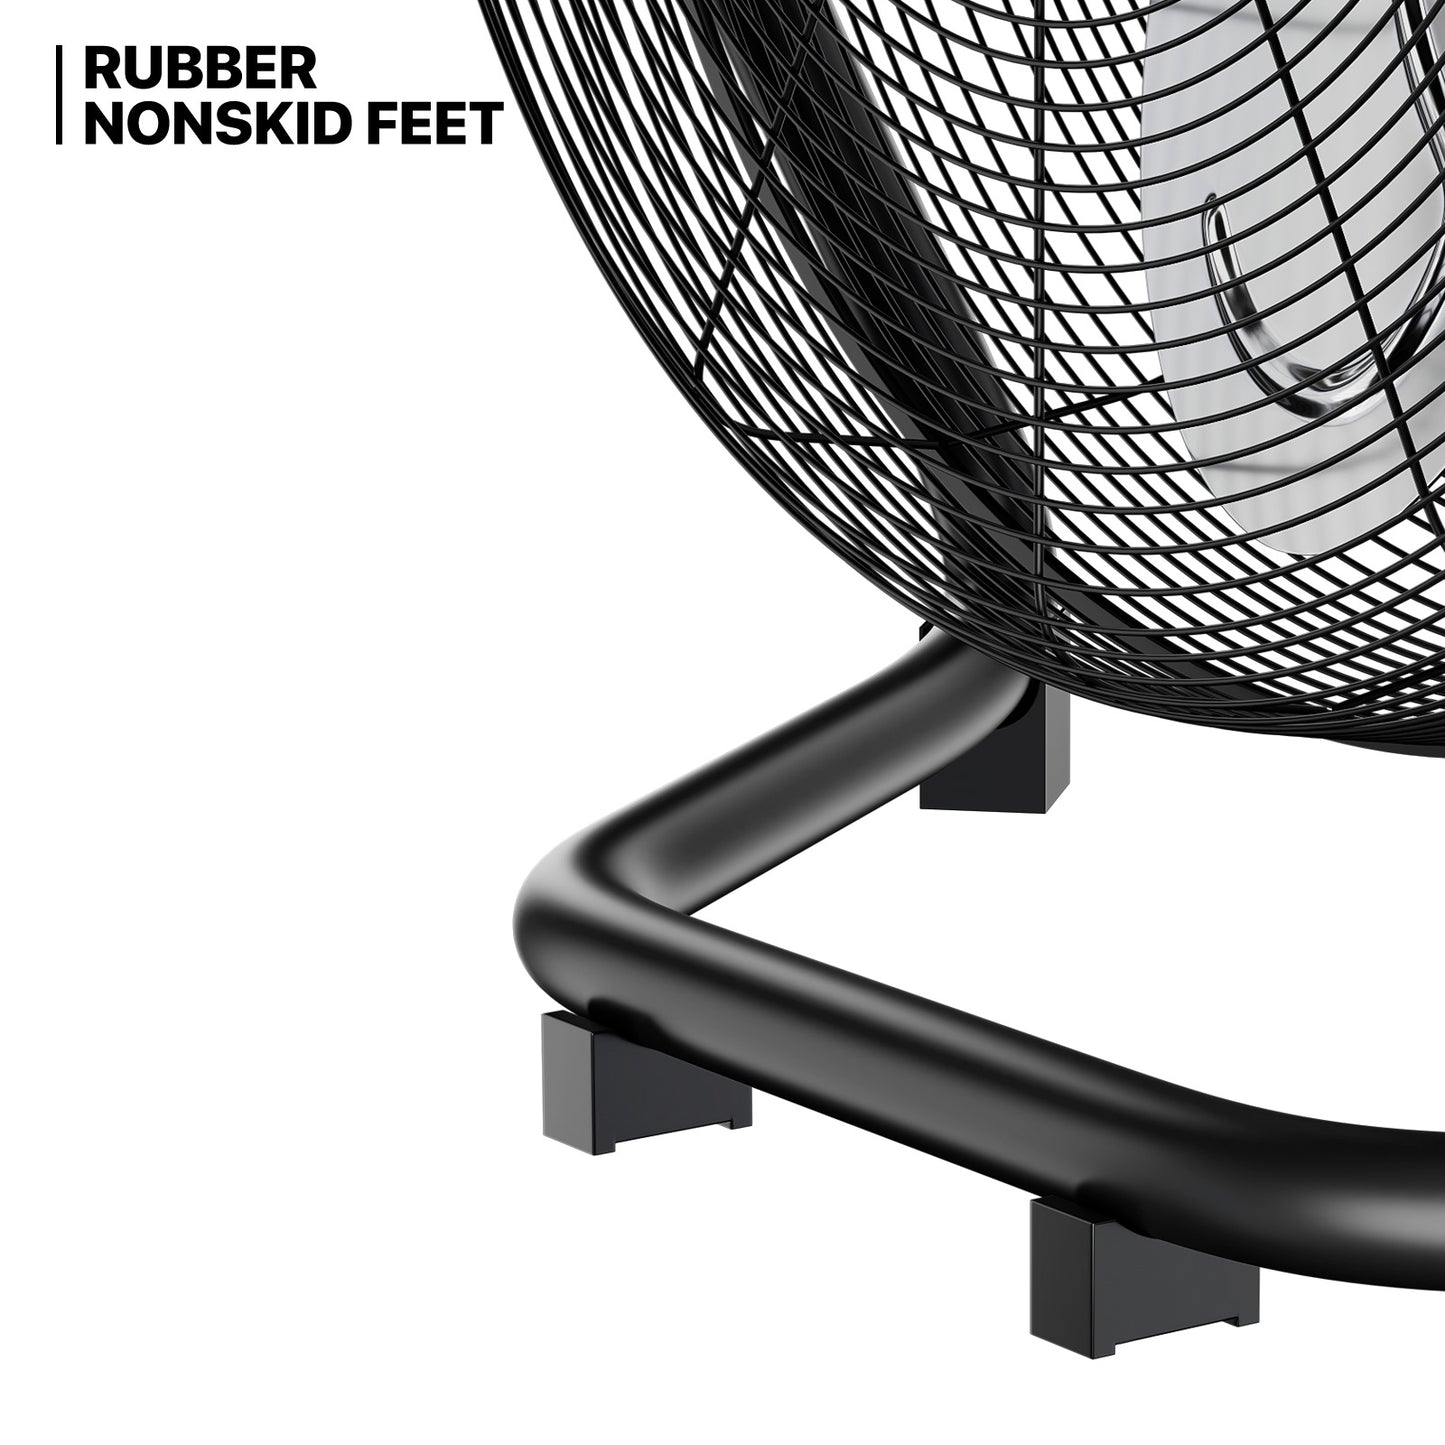 20" Floor Fan - 3 Speeds - Adjustable Tilt